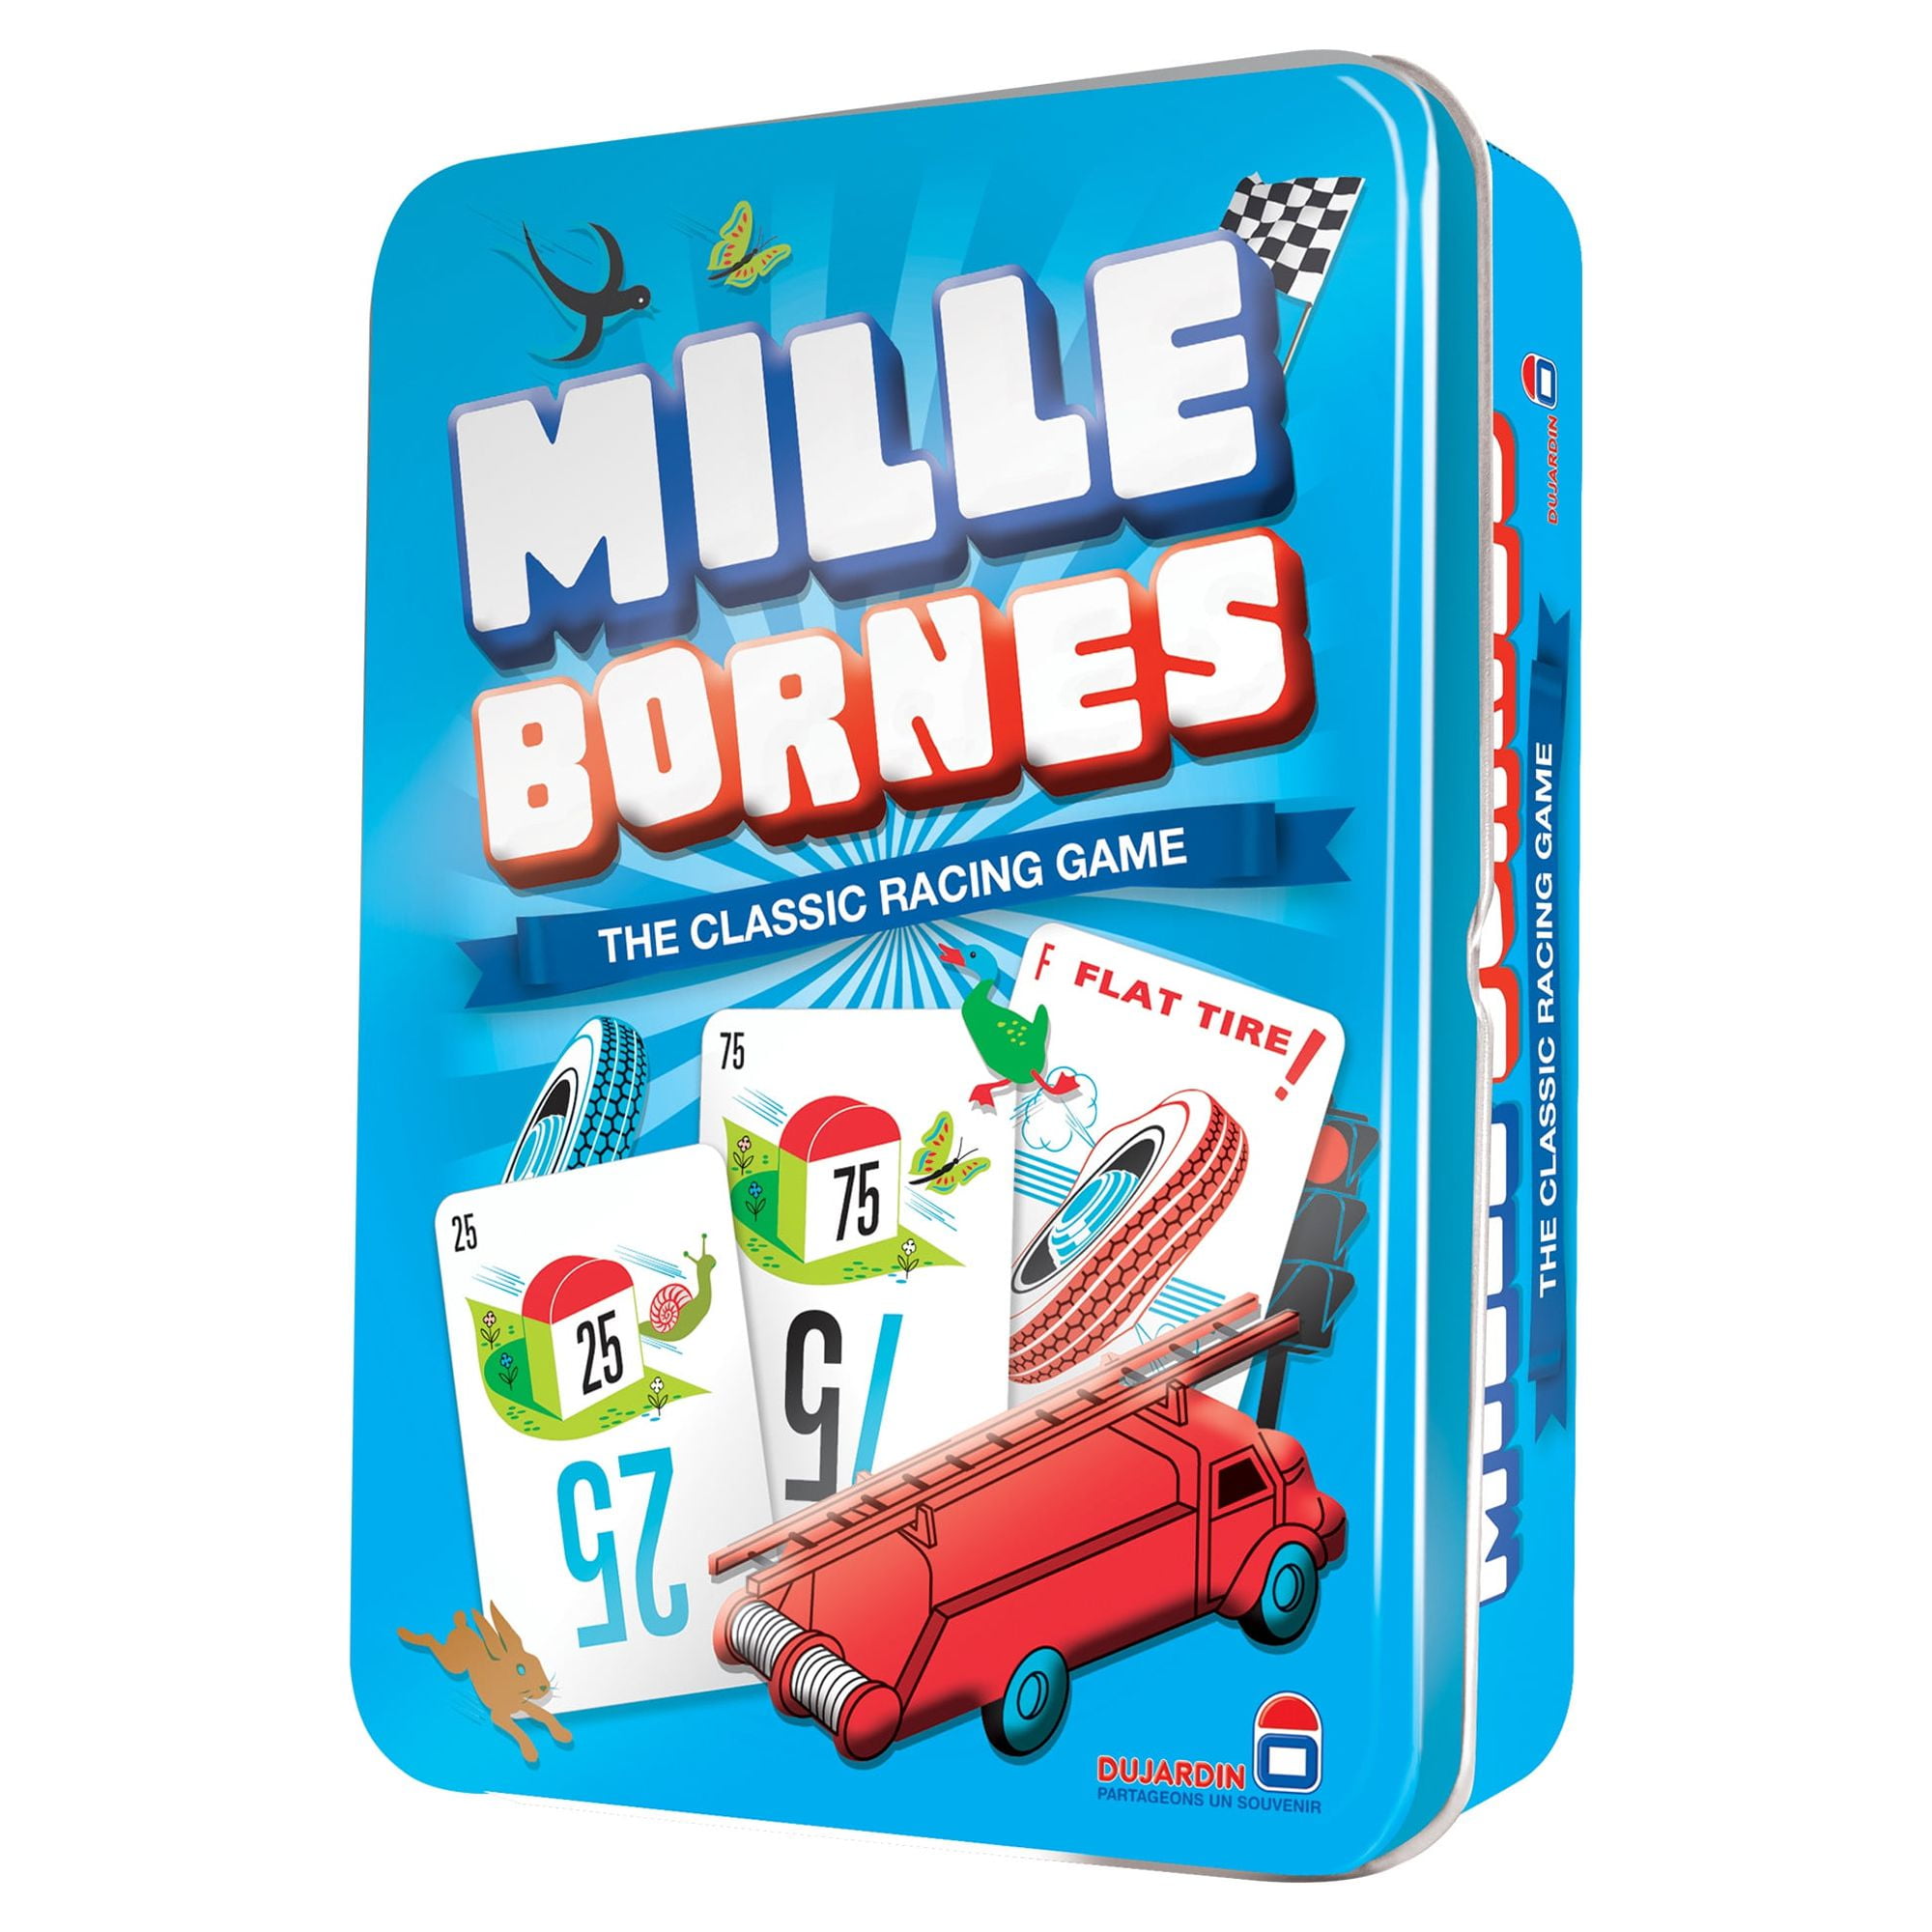 Mille Bornes Classic Racing Card Game Tin Box Asmodee MIB01 French